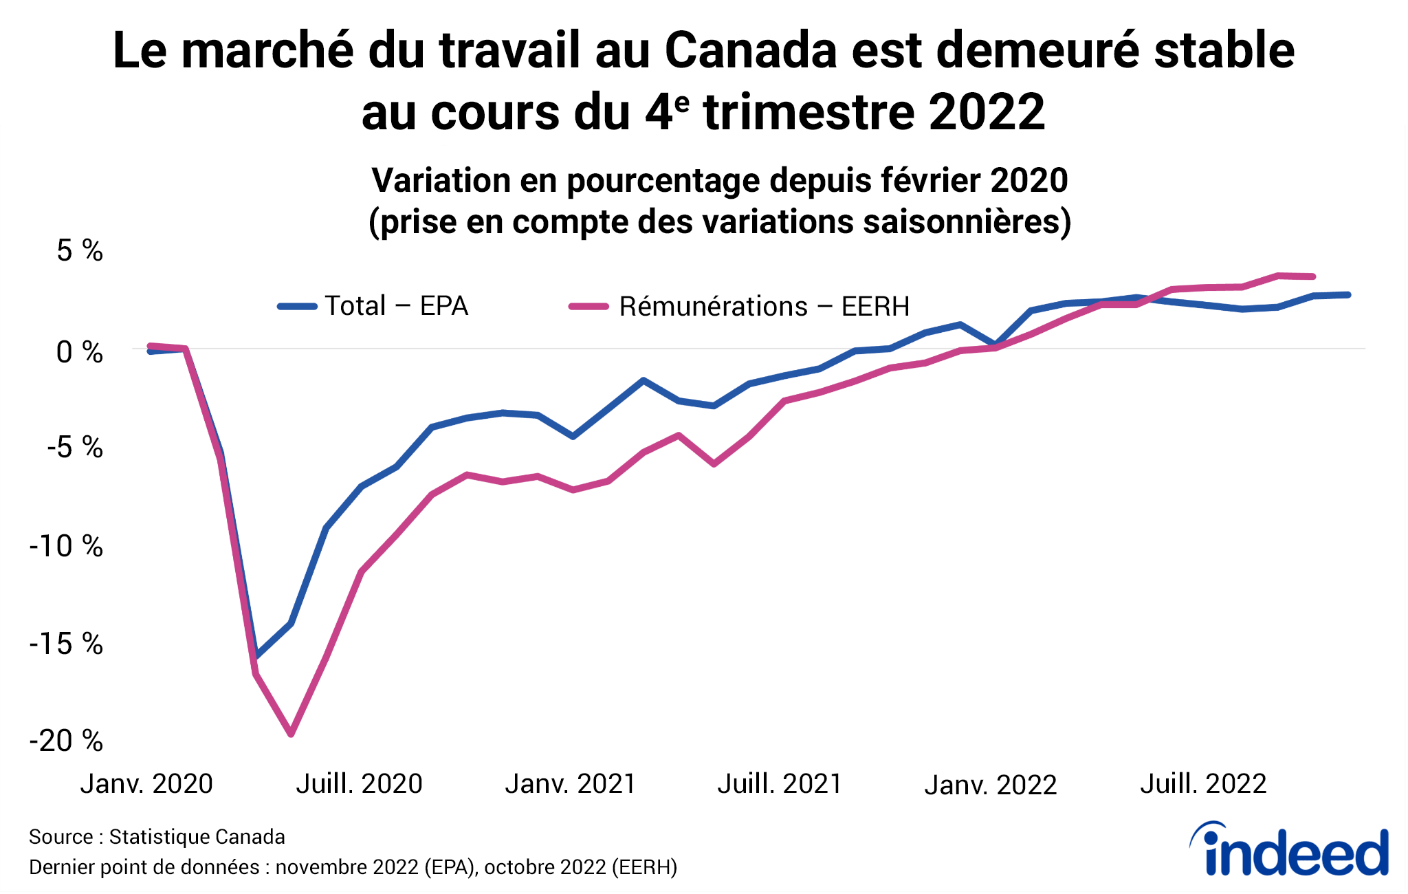 Graphique linéaire intitulé : « Le marché du travail au Canada est demeuré stable au cours du 4e trimestre 2022 ».